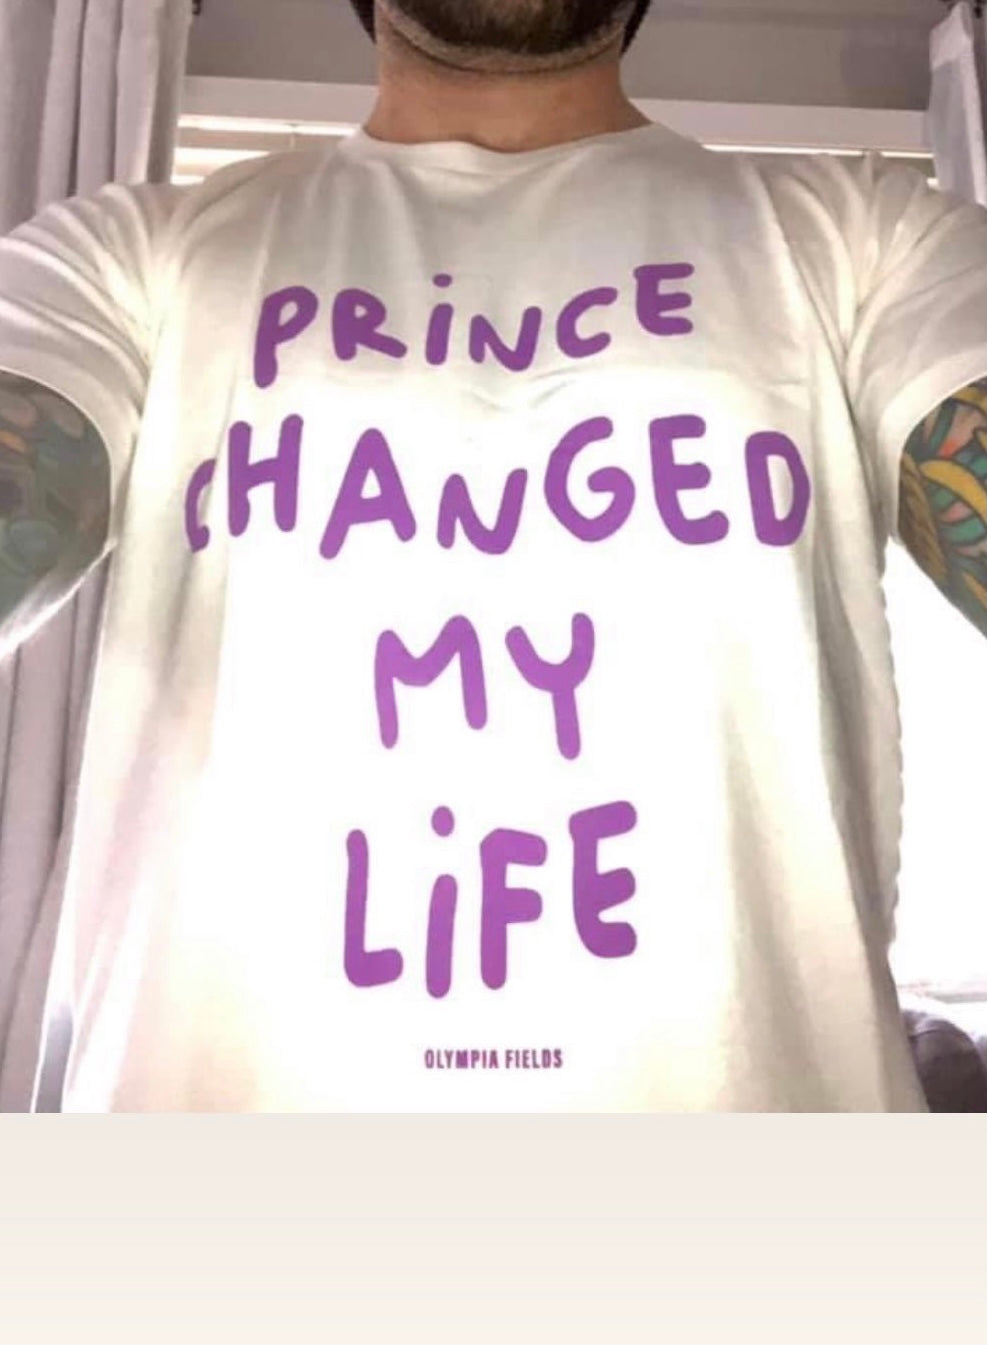 Prince changed my life tee